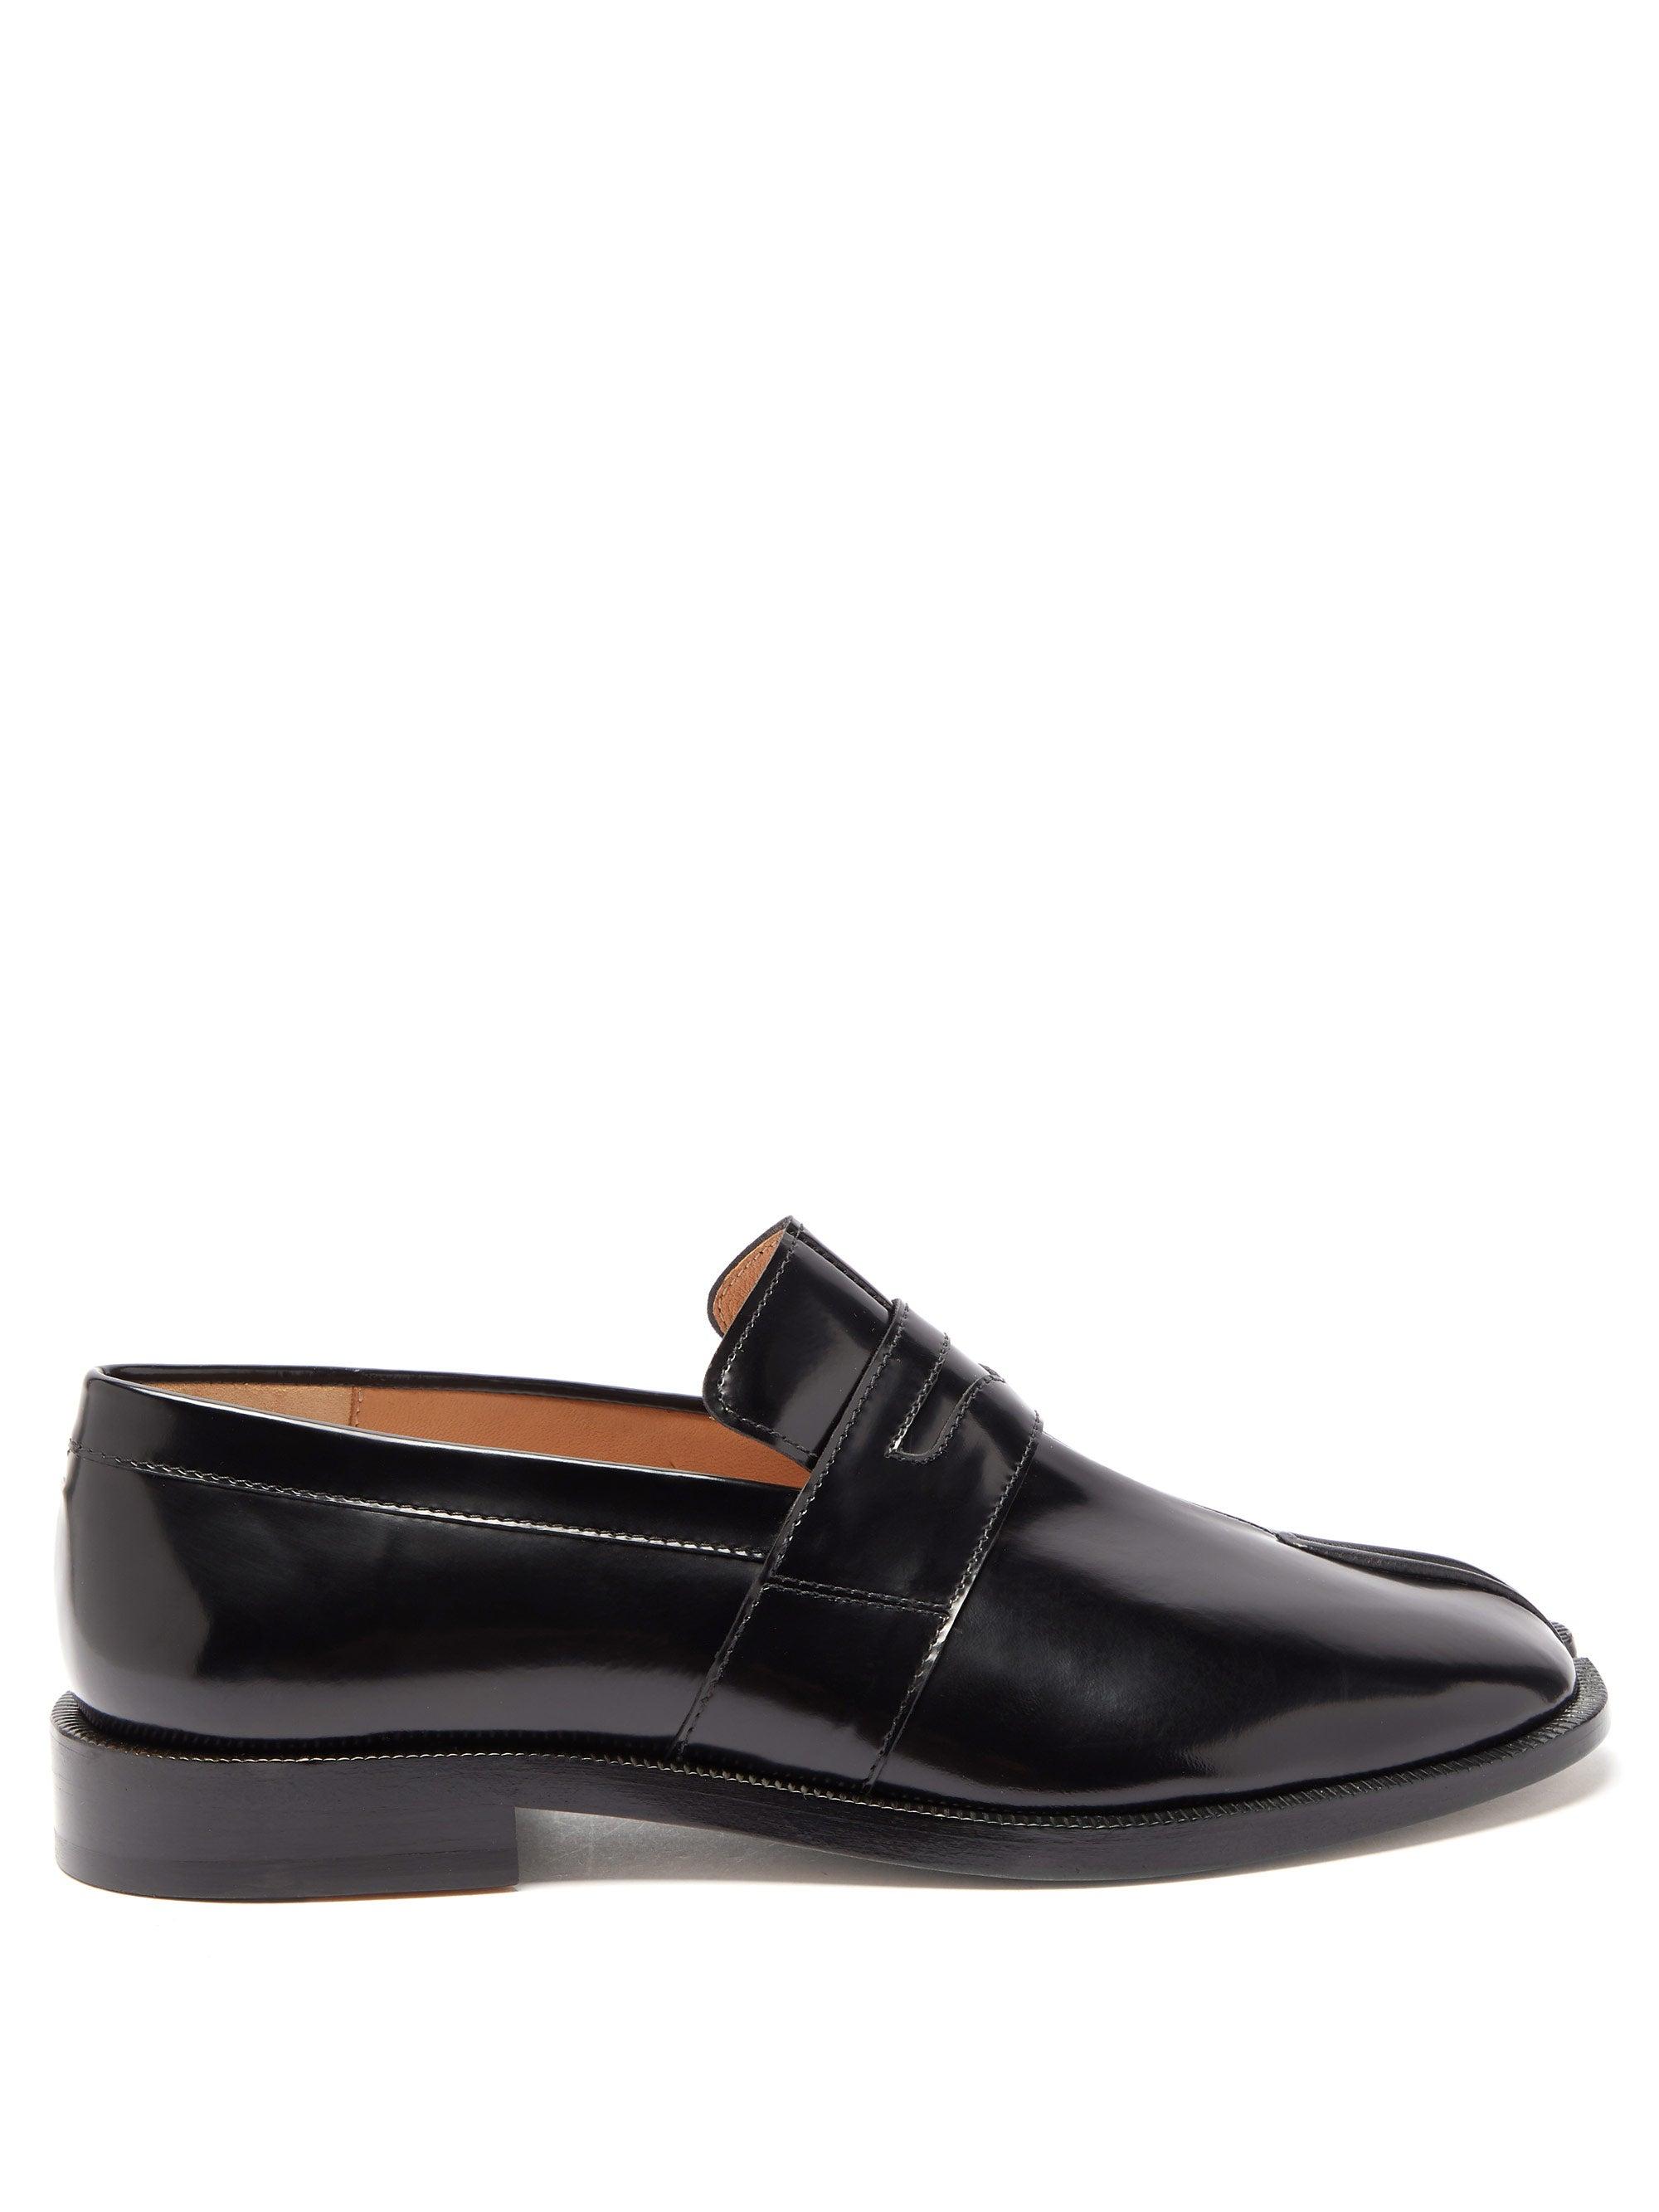 Maison Margiela Tabi Split-toe Leather Loafers in Black - Lyst